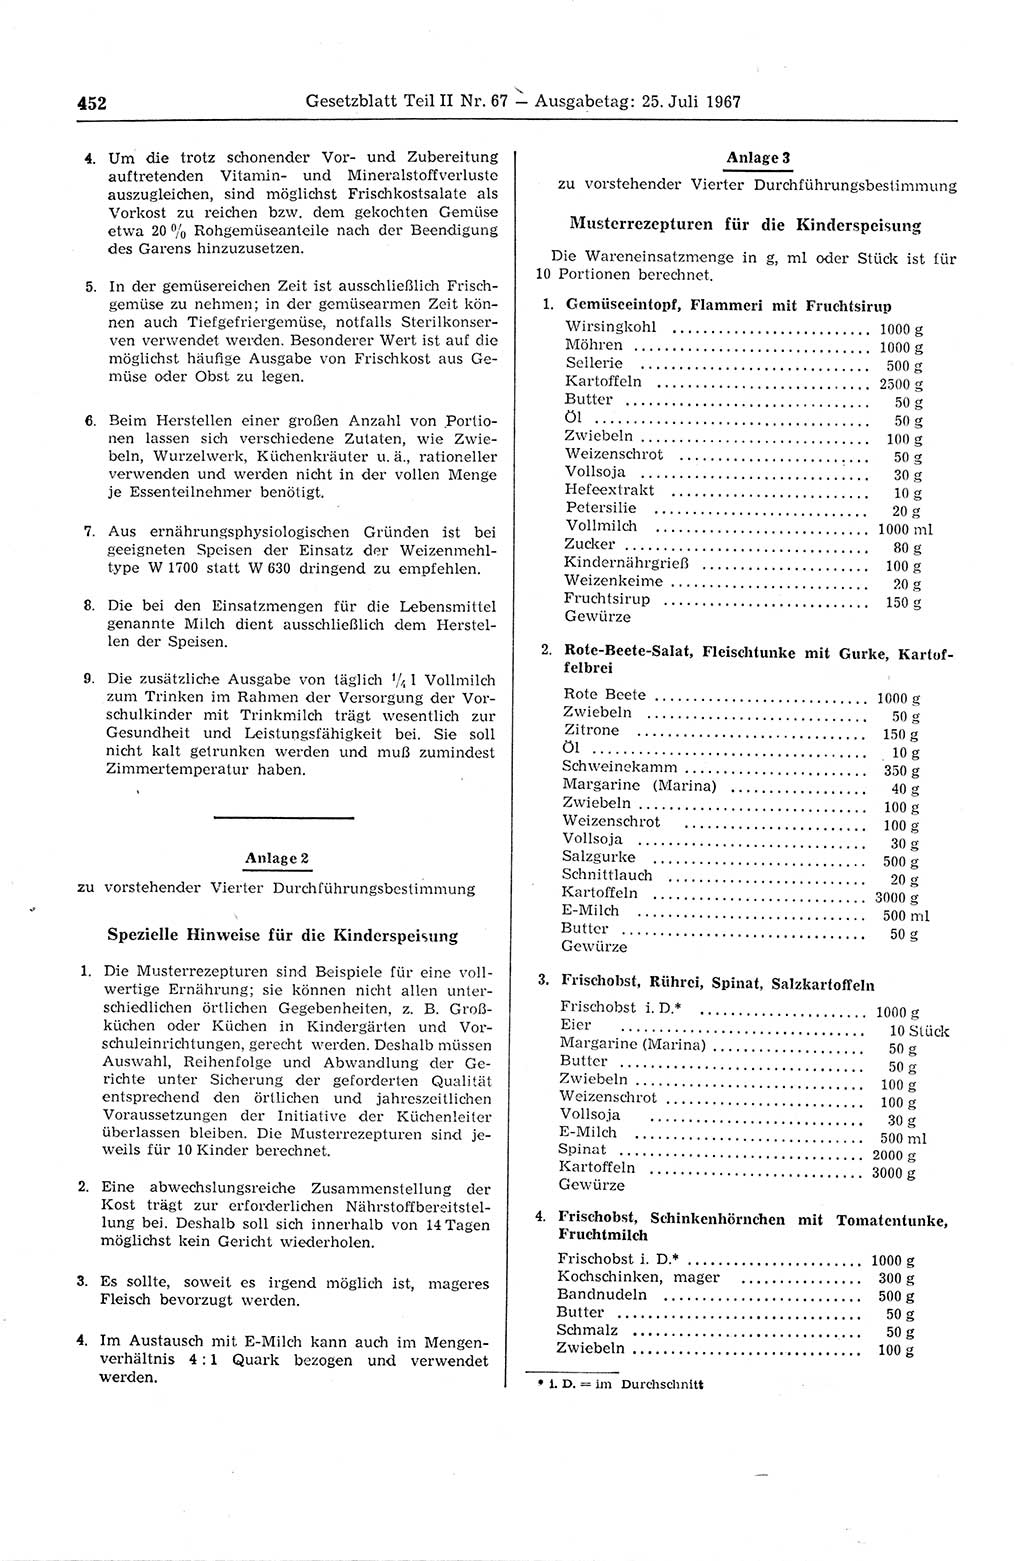 Gesetzblatt (GBl.) der Deutschen Demokratischen Republik (DDR) Teil ⅠⅠ 1967, Seite 452 (GBl. DDR ⅠⅠ 1967, S. 452)